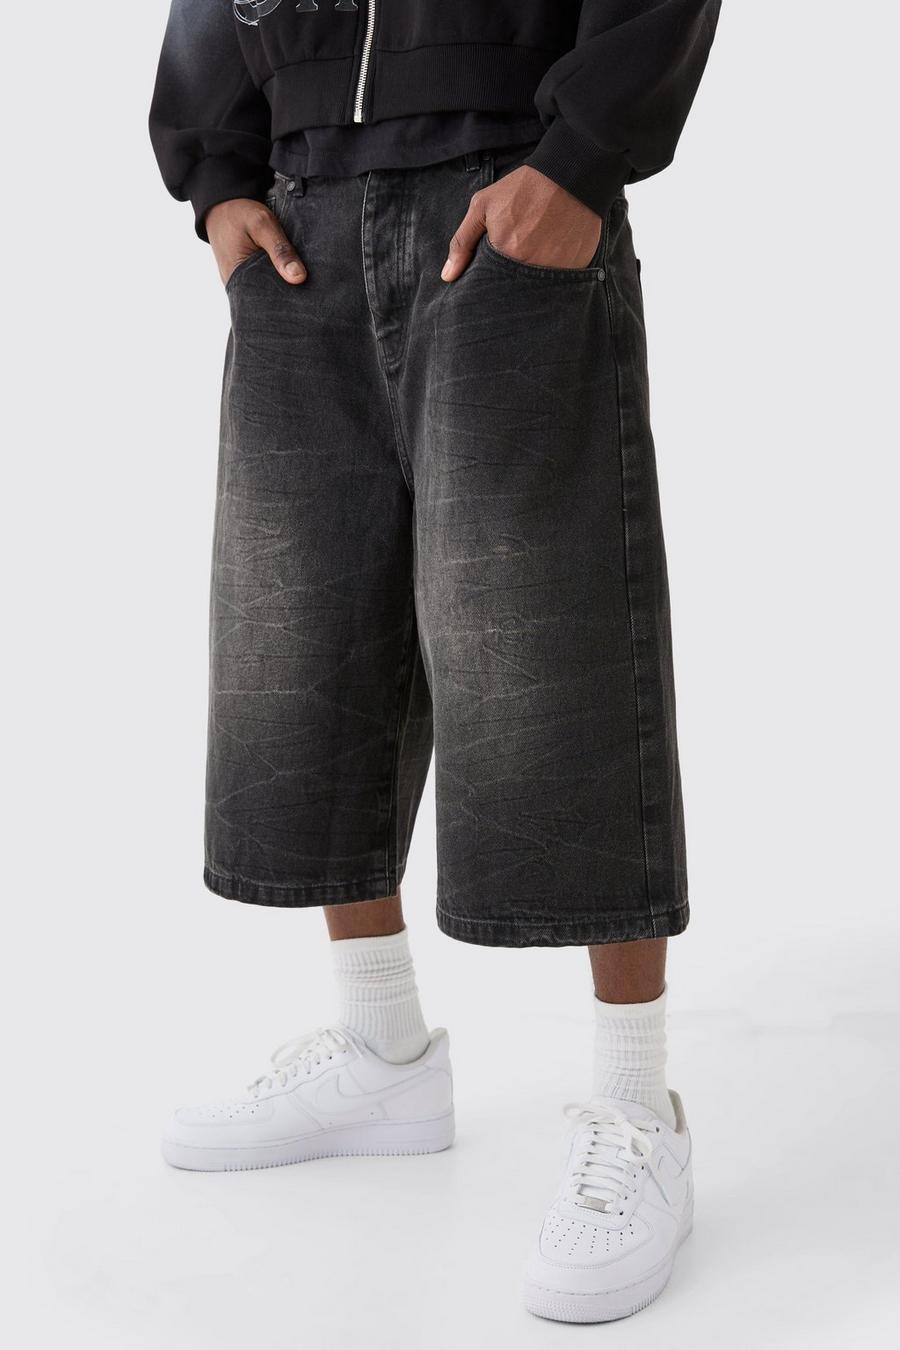 Lange Jeansshorts in Schwarz, Washed black